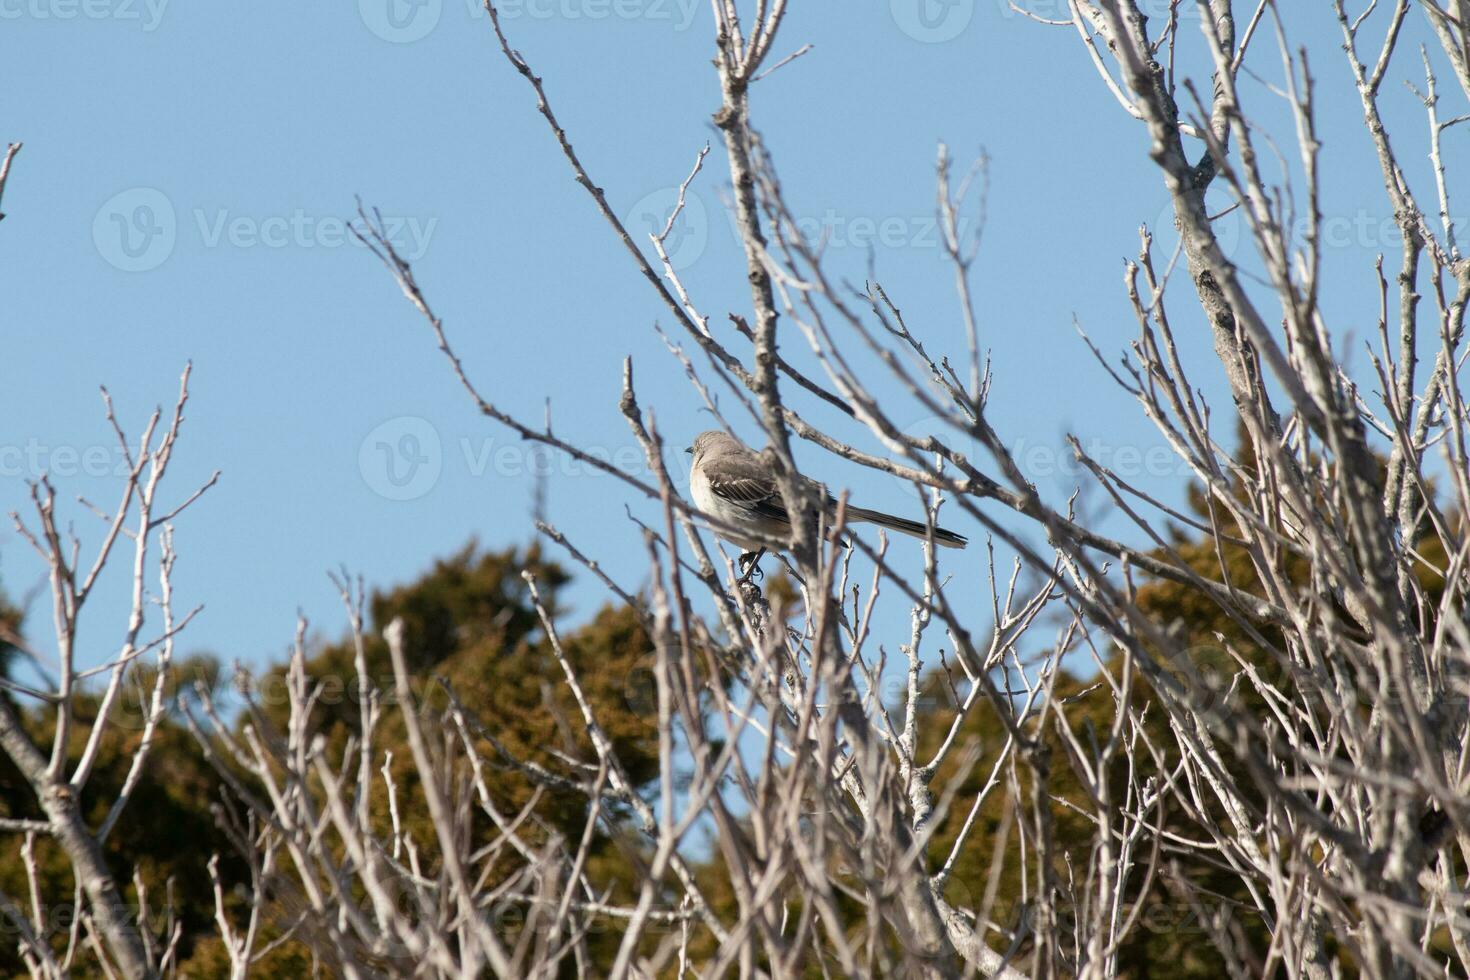 cette mignonne peu oiseau moqueur Sam posant dans le arbre lorsque je a pris le photo. le branches il Sam dans fait ne pas avoir tout feuilles à cacher lui. le hiver saison est juste fin et printemps est en arrivant. photo